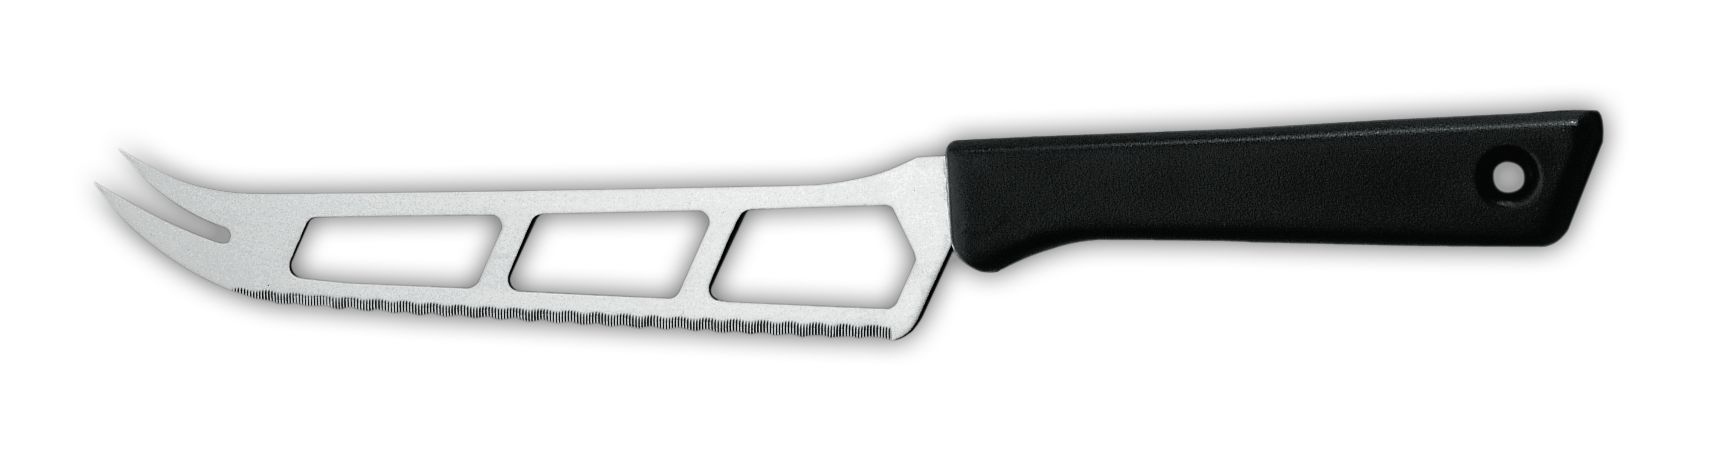 Нож для сыра 9655, 15 см,  черная рукоятка